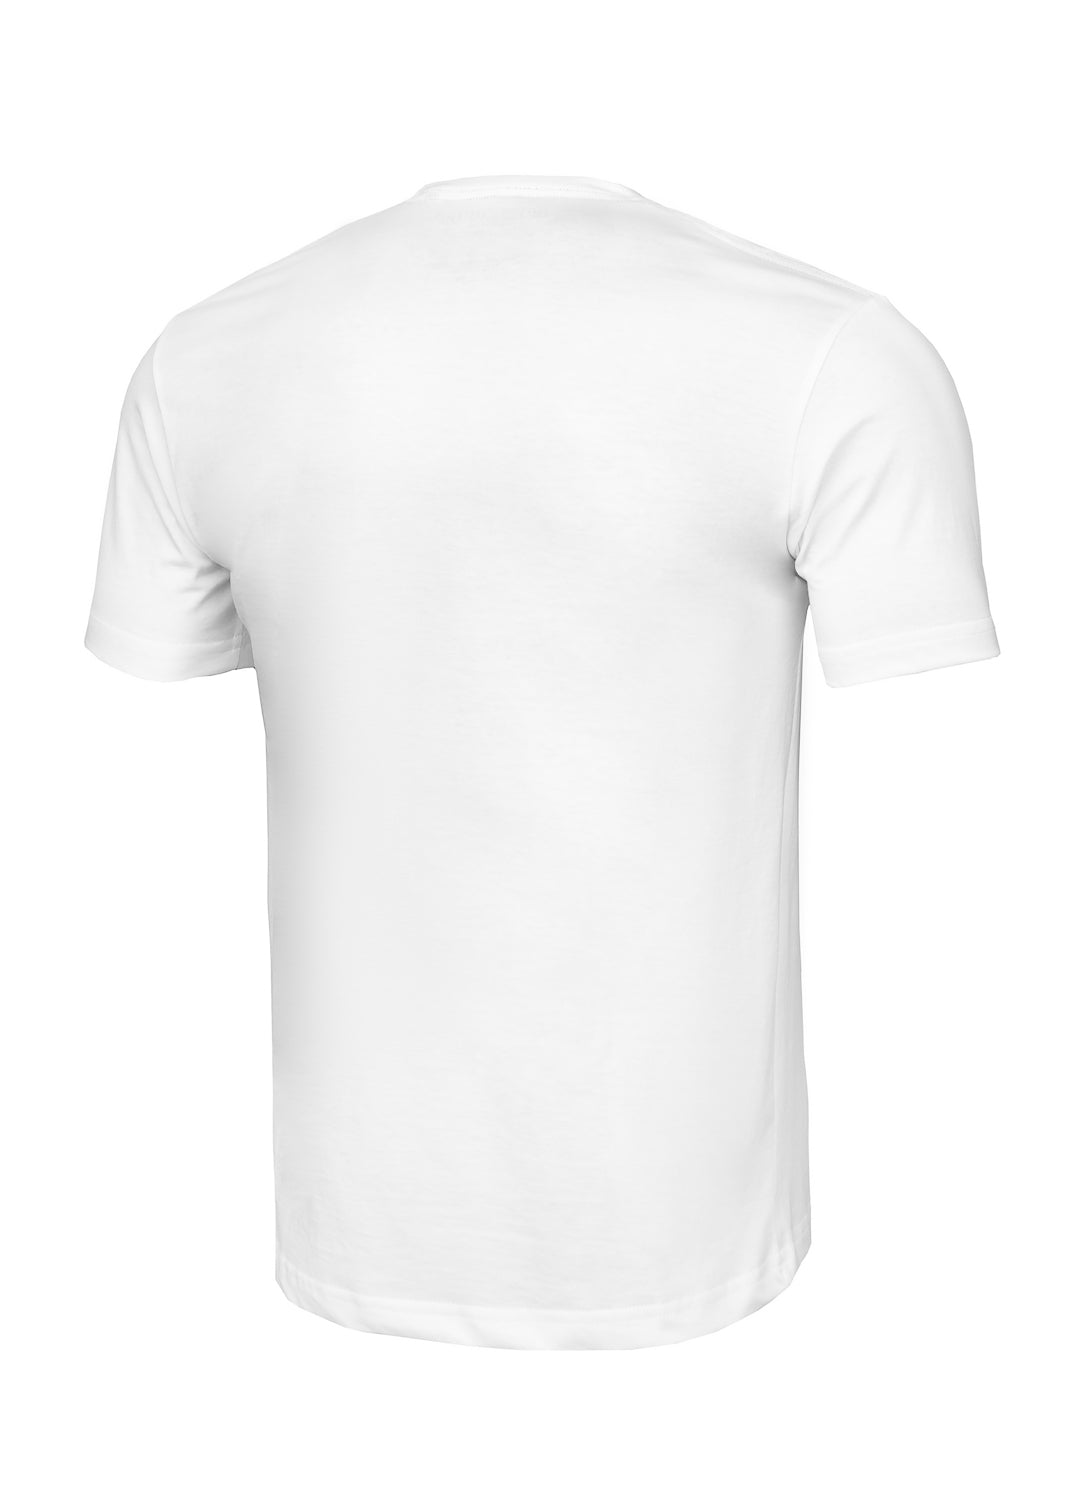 PITBULL USA White T-shirt